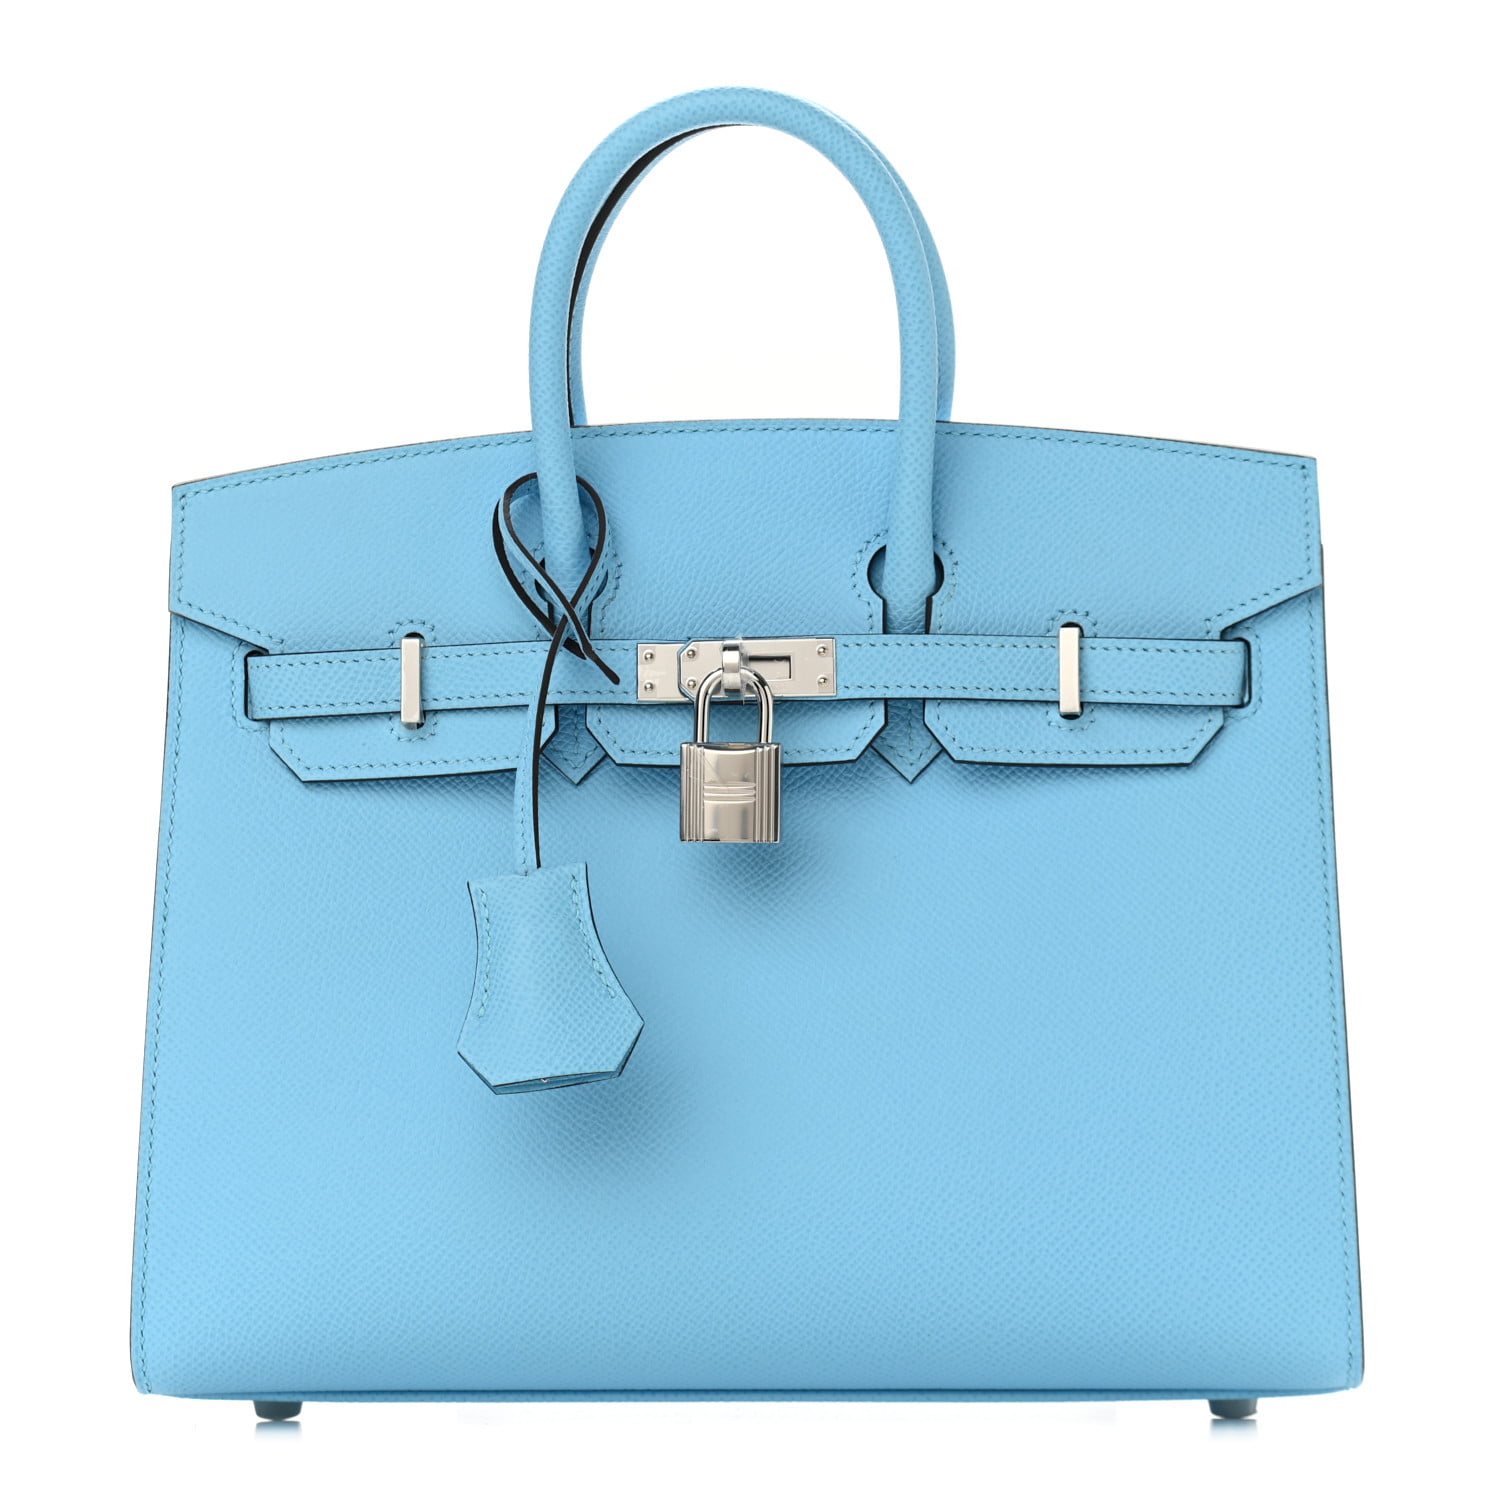 New Hermès Birkin Backpack for Spring 2022 | PurseBop